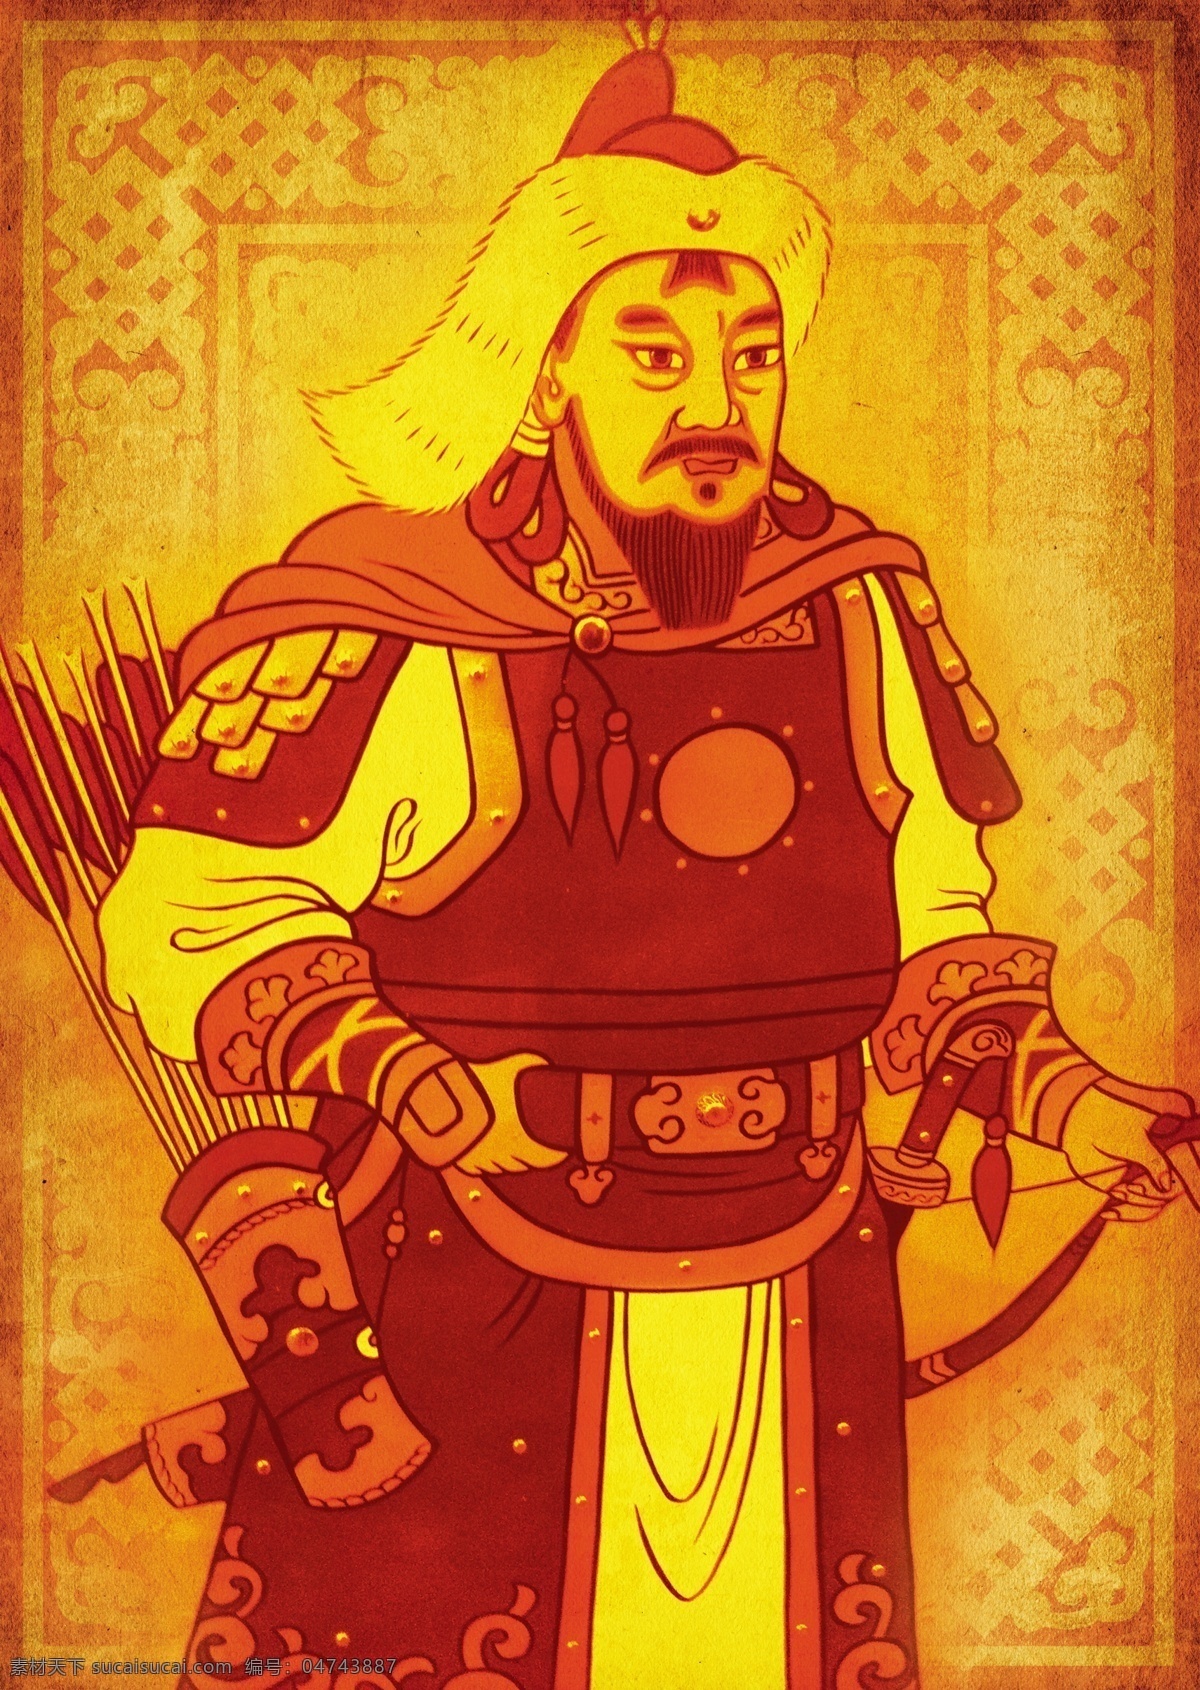 蒙古人物 蒙古人物将军 跨刀 佩剑 蒙古将军 蒙古可汉 广告设计模板 源文件